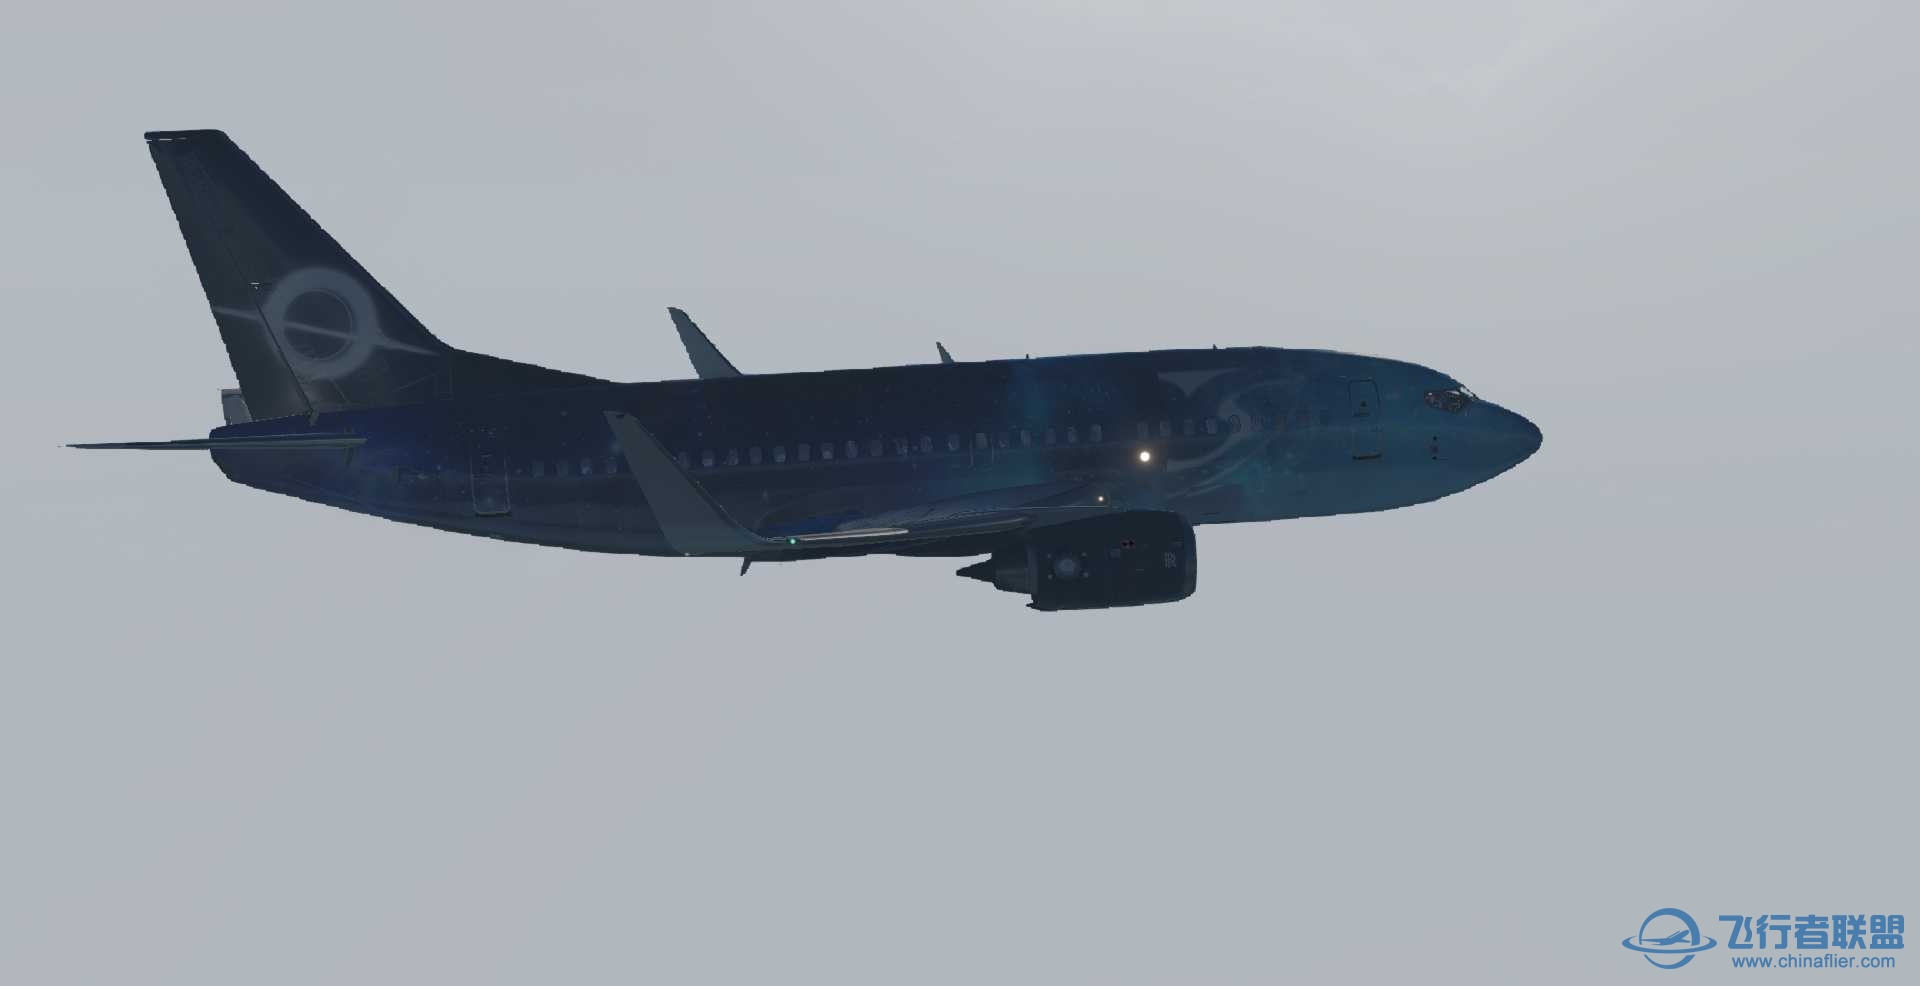 波音737-500 星空彩绘机 ZSPD-ZBAD航线美图-5493 